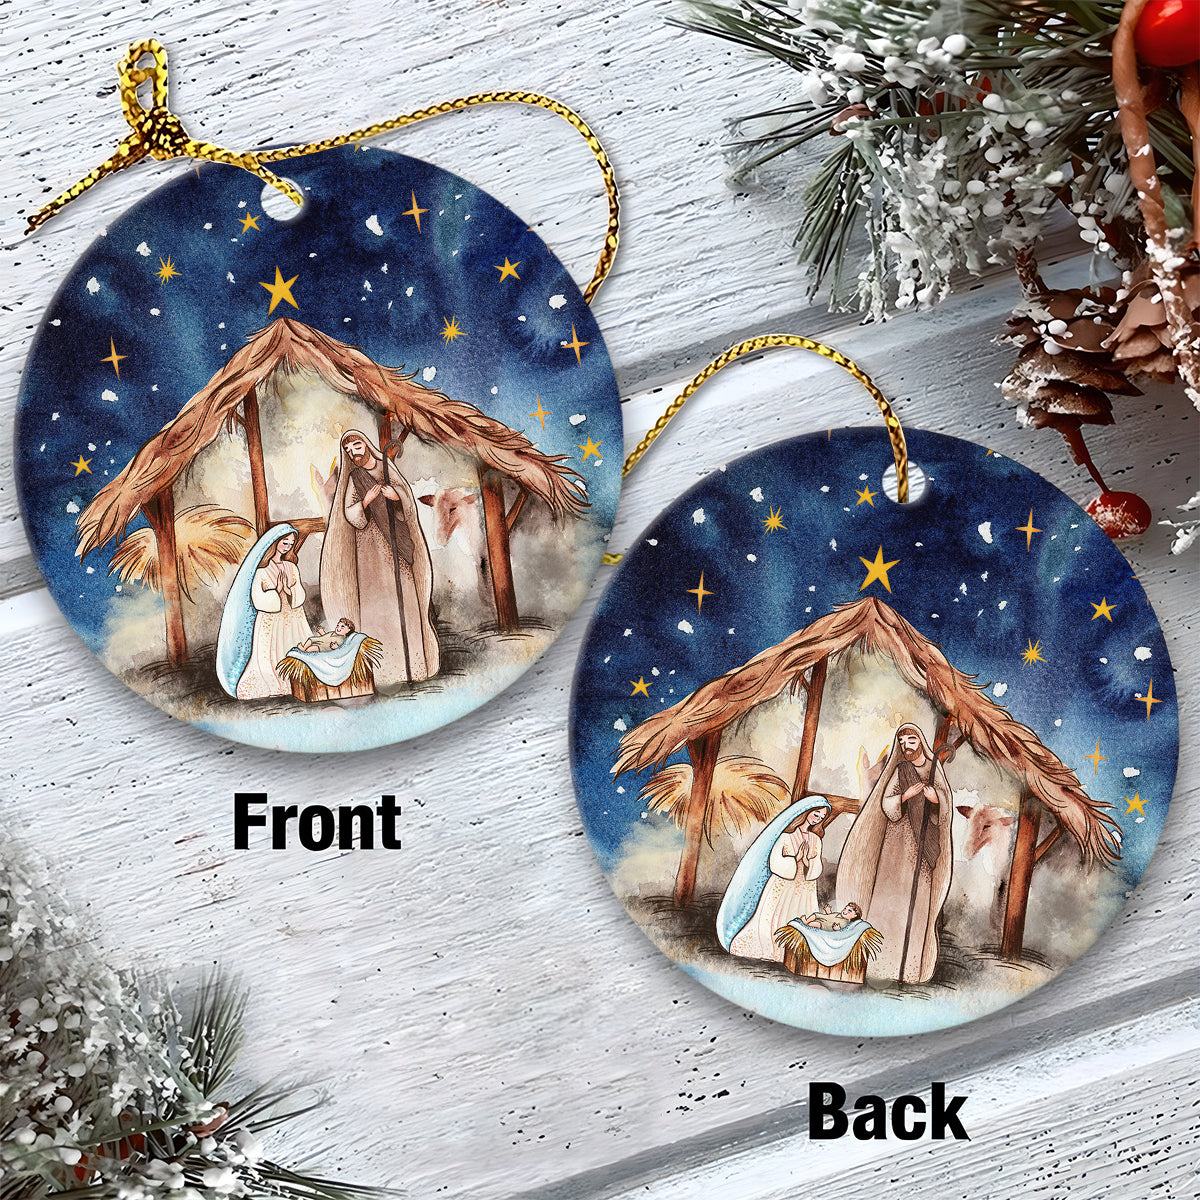 Jesus Ceramic Christmas Ornament - Joseph Mary Christ Was Born Christmas Eve Ceramic Ornament, Gift For Christmas, Holiday Decor